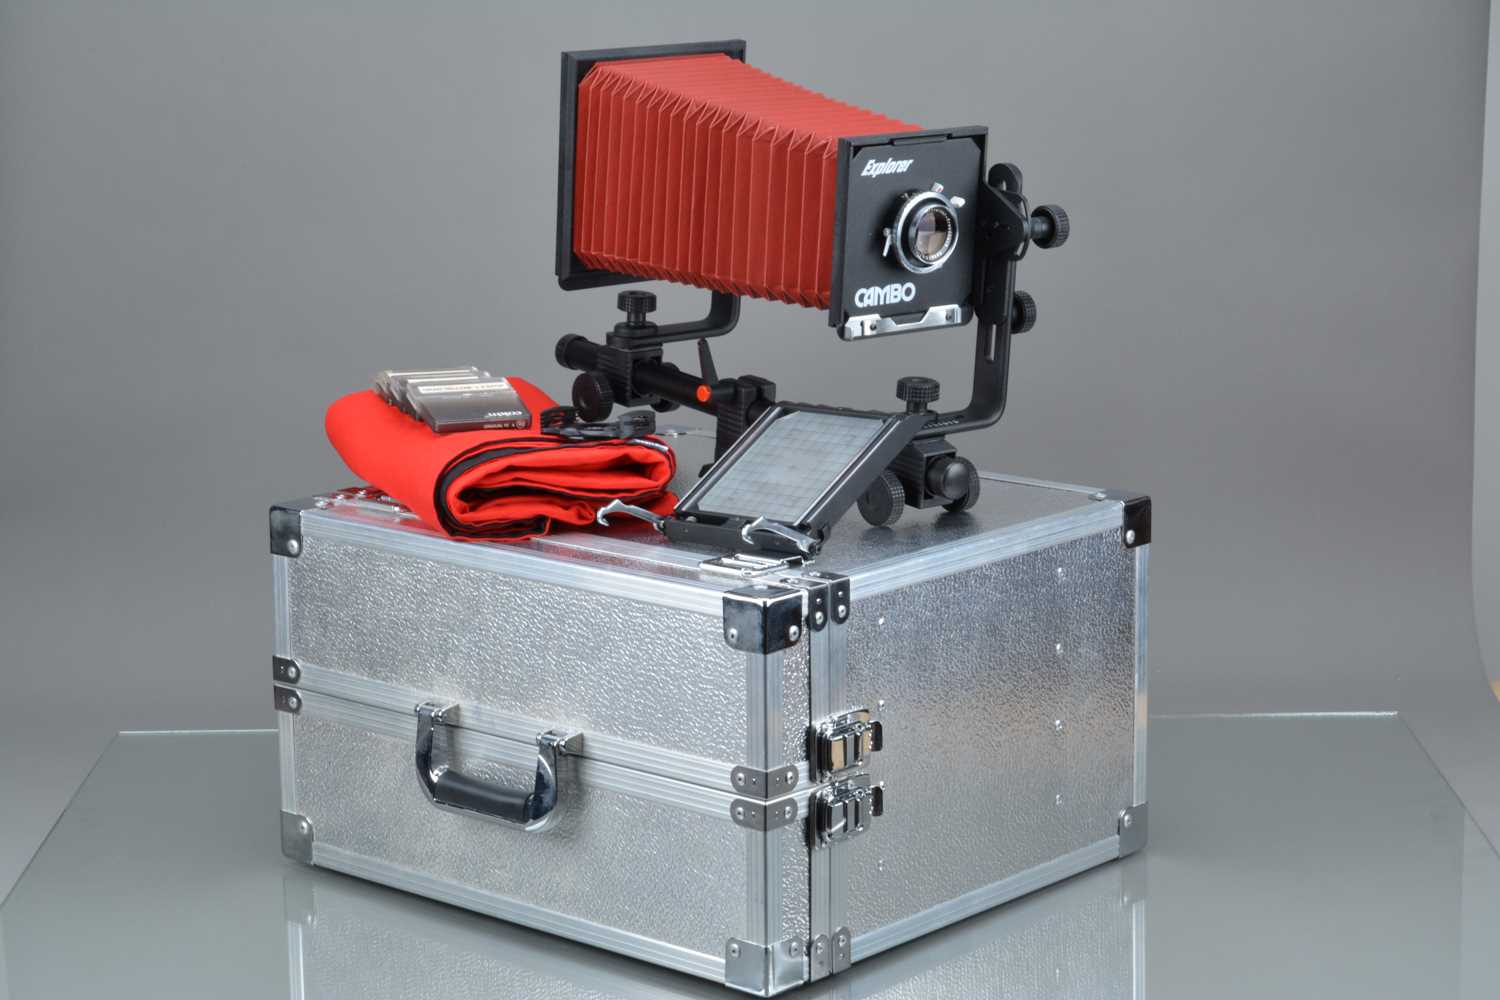 A Cambo Explorer 4x5 mono rail Camera,